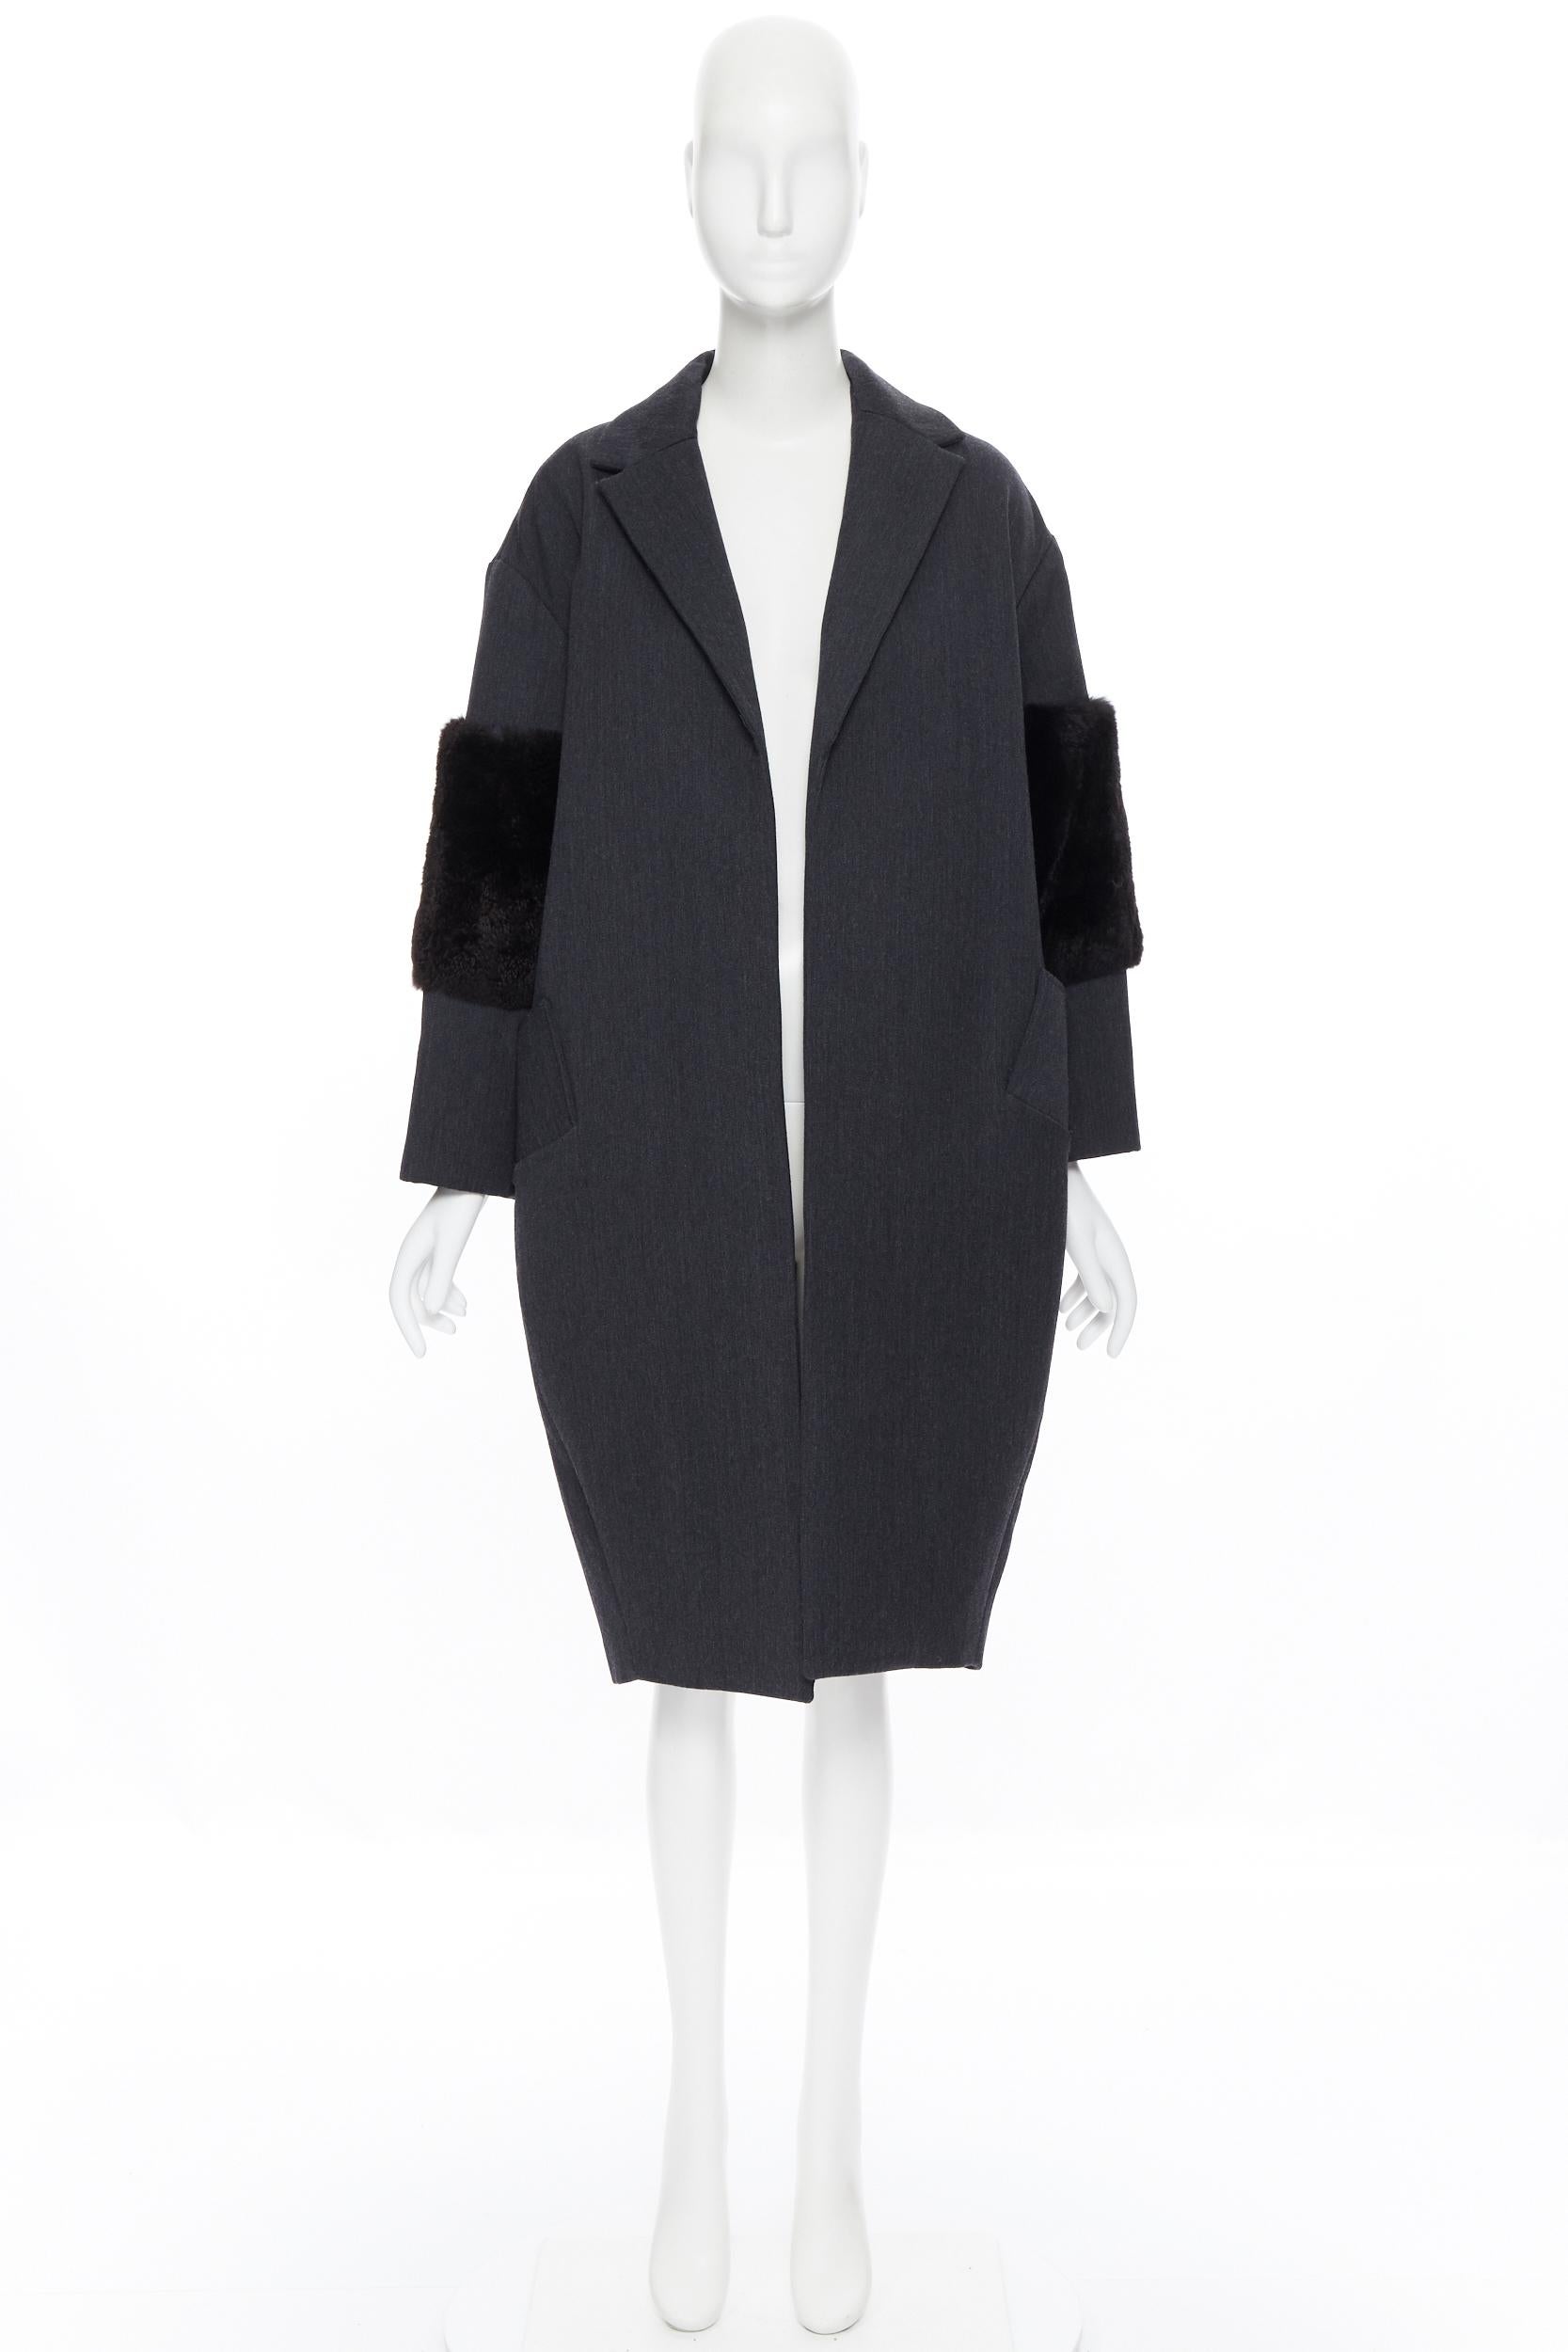 Black SALLY LAPOINTE 2016 grey virgin wool rabbit fur sleeves cocoon over coat US4